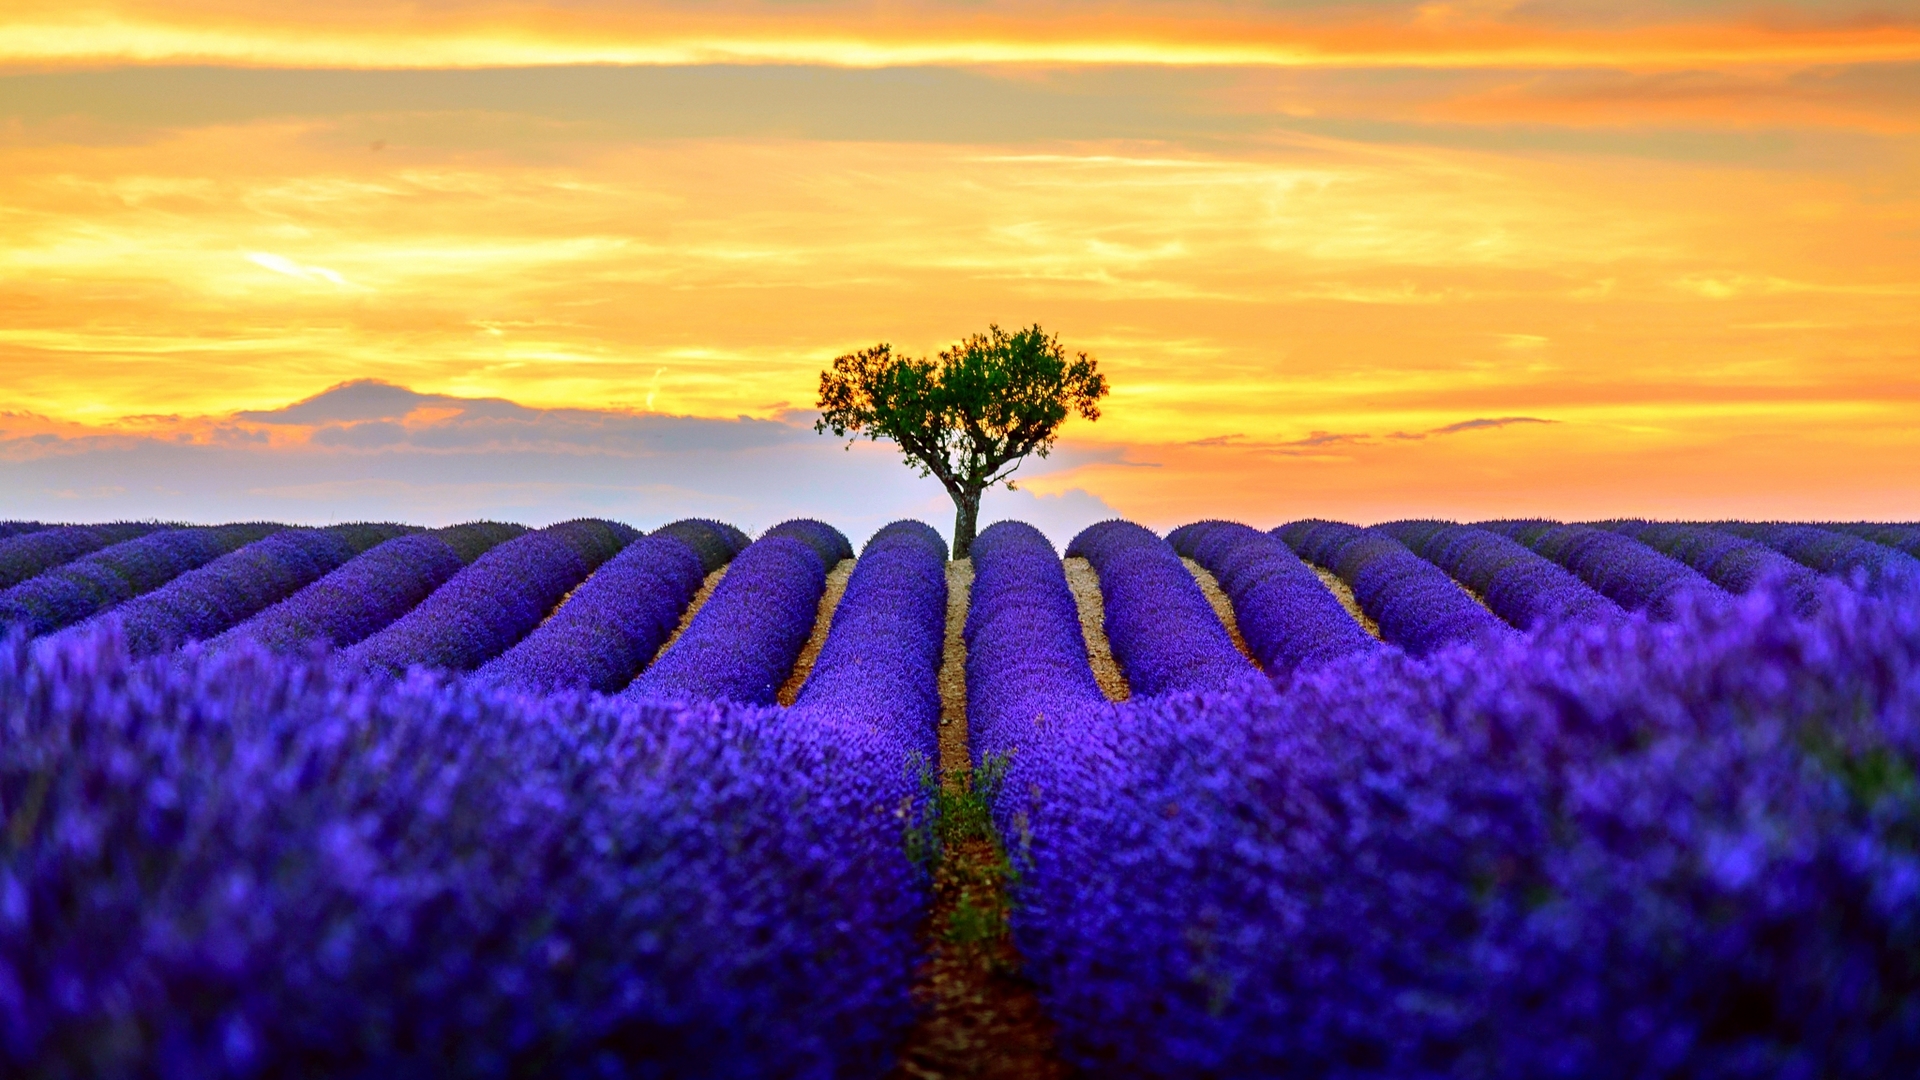 Wallpaper / yellow, lavender, peisaj, tree, summer, flower, field, landscape, blue free download